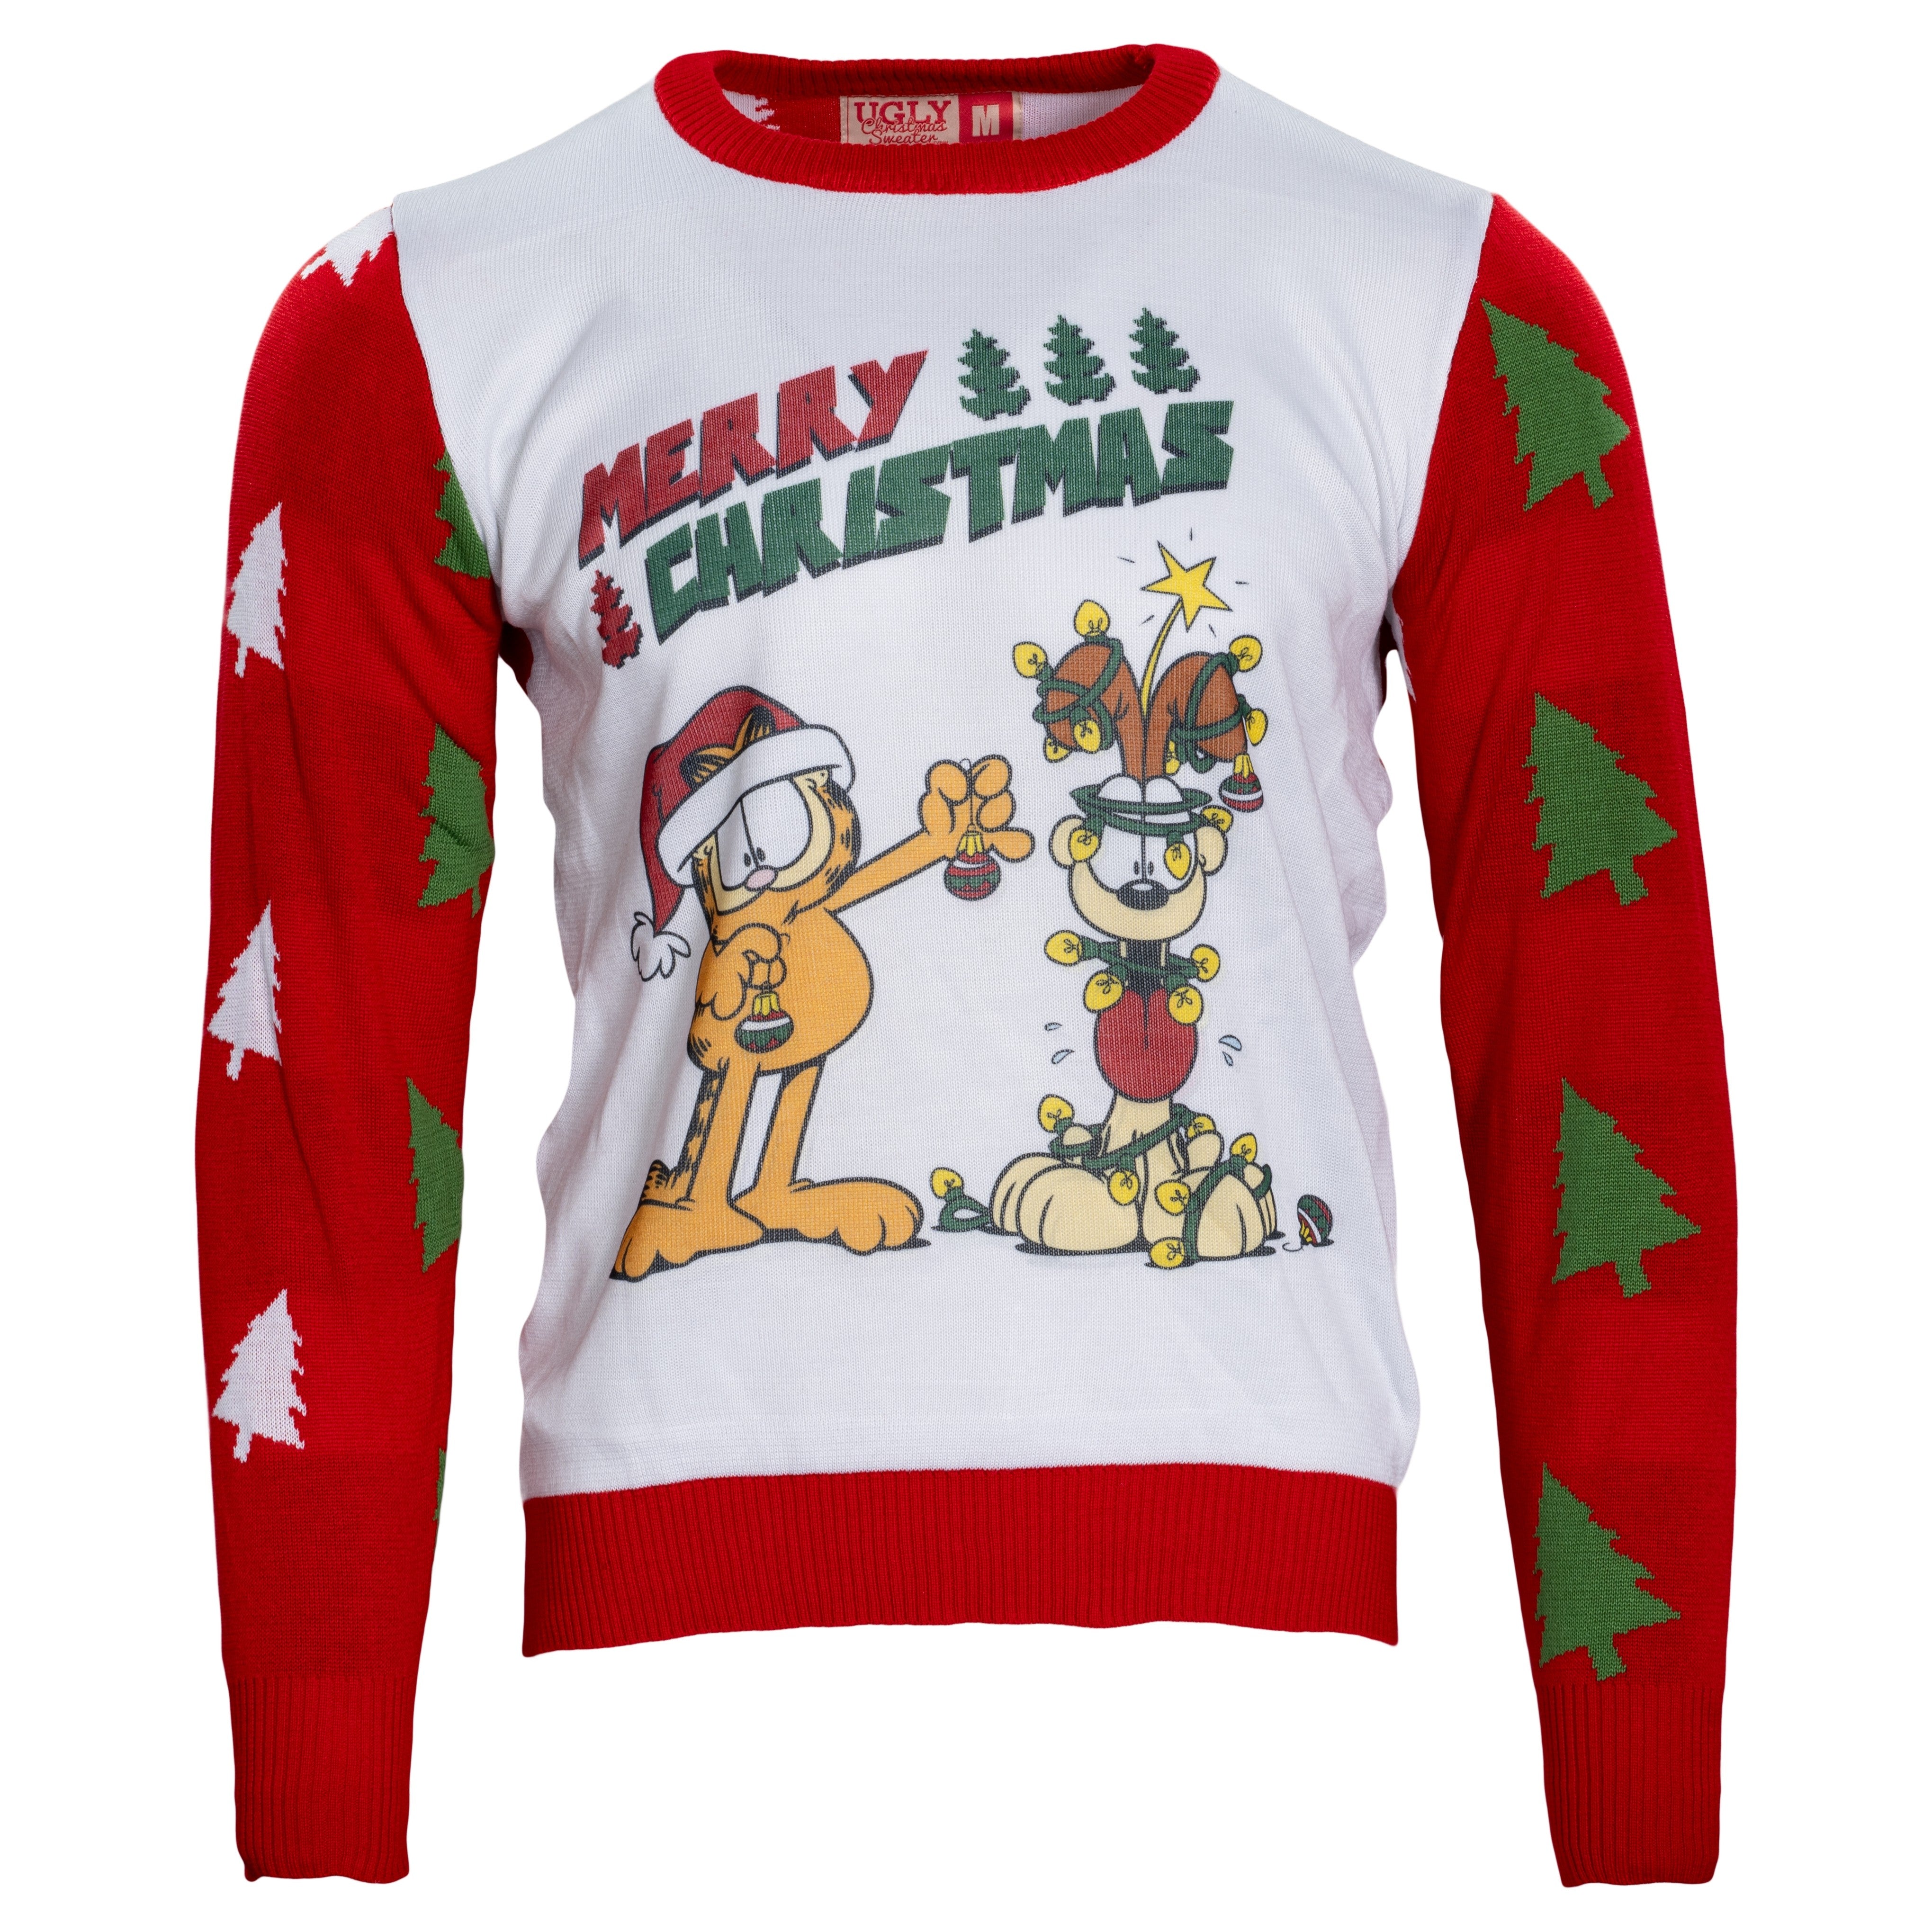 Merry Christmas Garfield Odie Xmas Tree Sweater